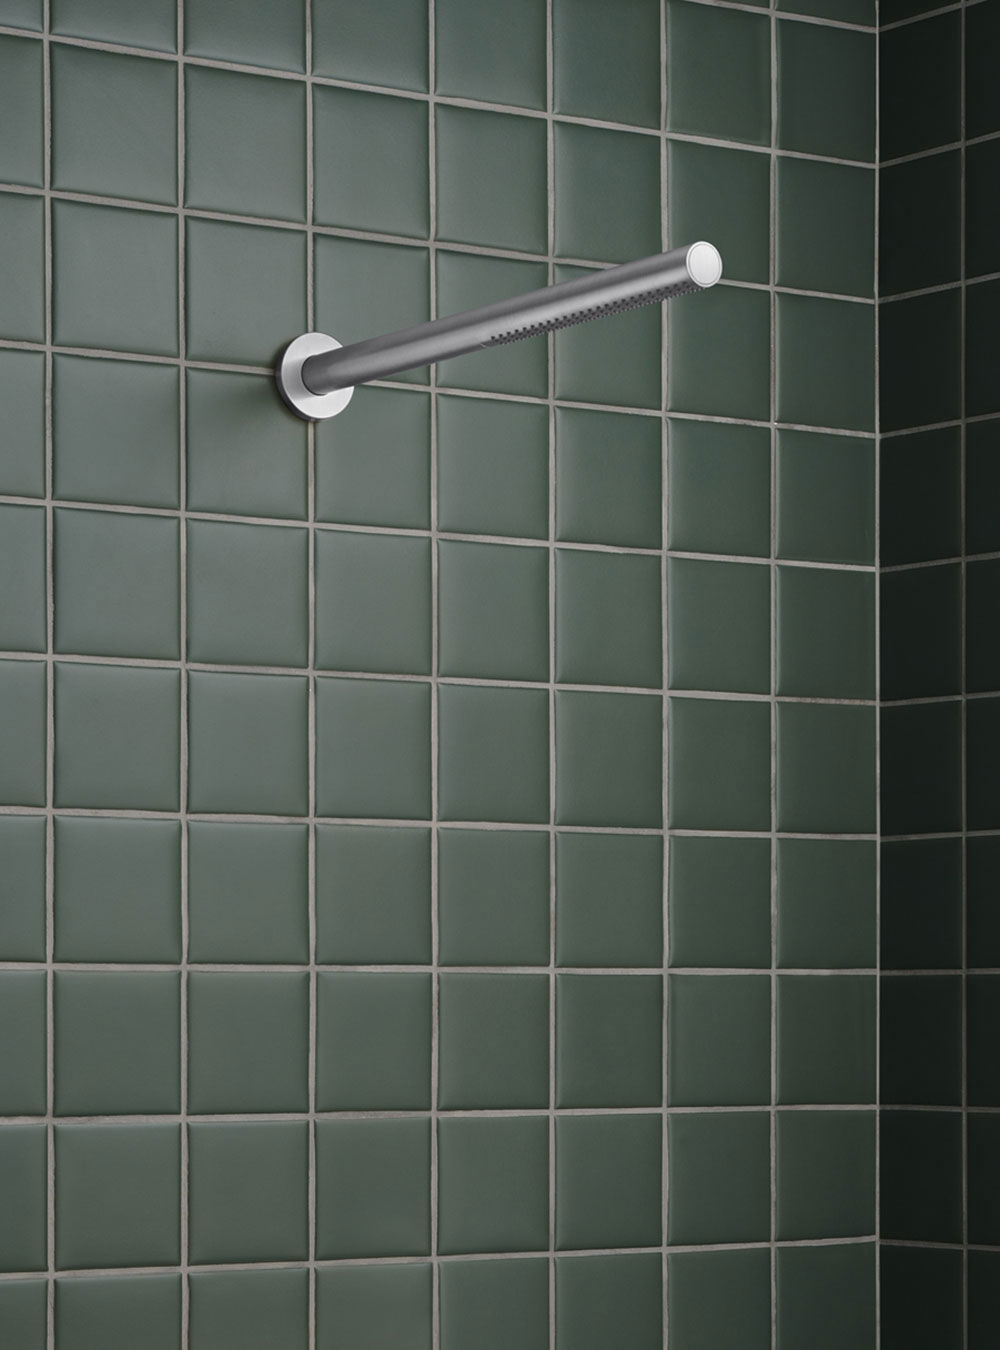 080ST: Cabeza de ducha a pared 500 mm.Incluido arandela de 60 mm.